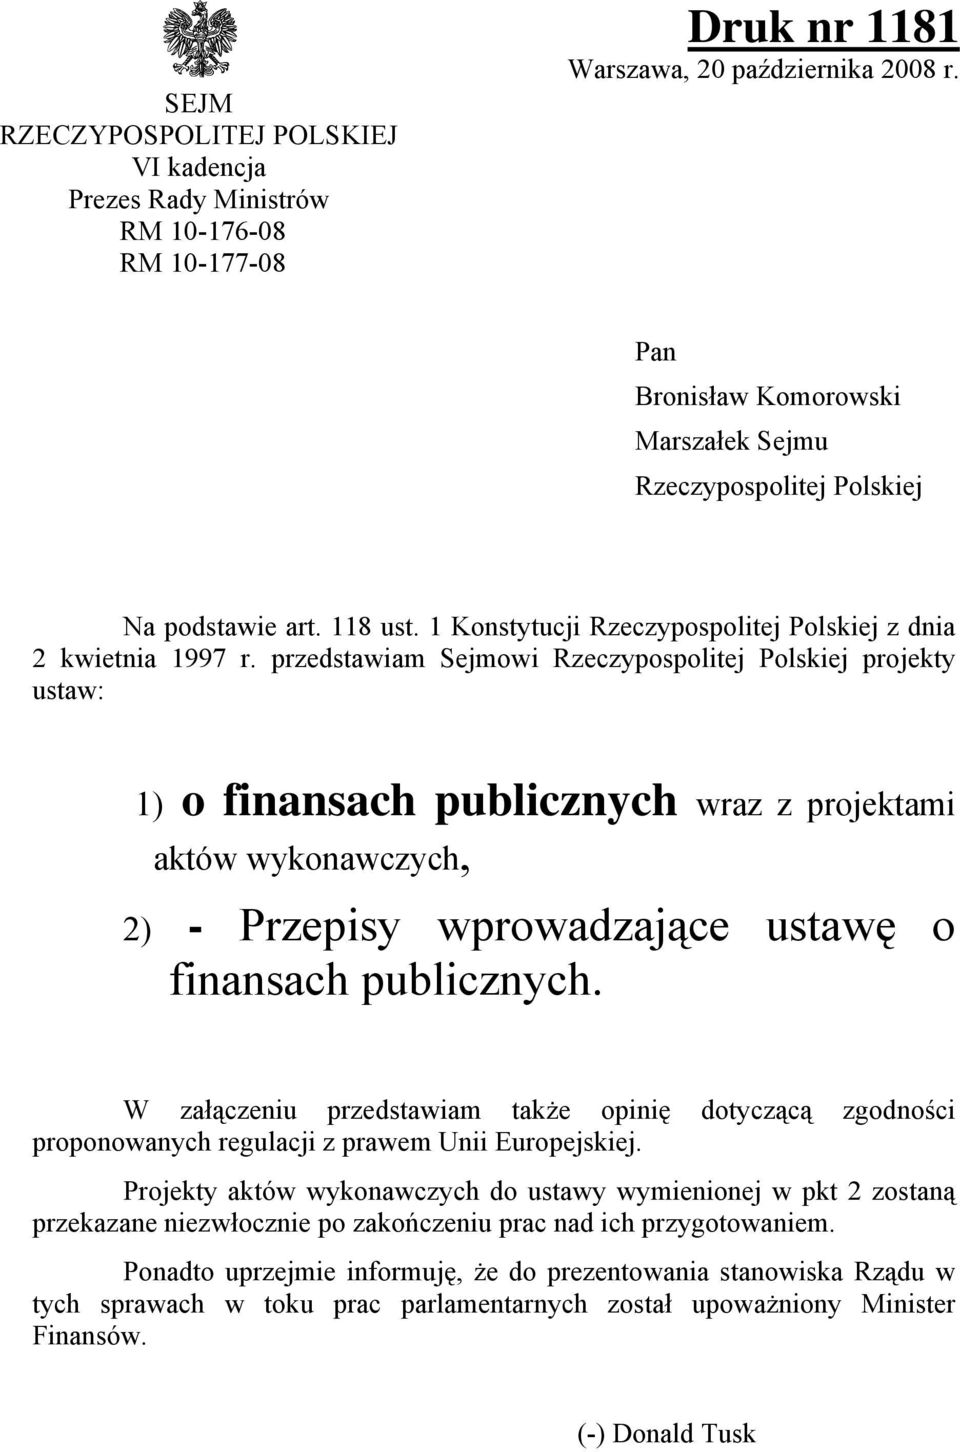 przedstawiam Sejmowi Rzeczypospolitej Polskiej projekty ustaw: 1) o finansach publicznych wraz z projektami aktów wykonawczych, 2) - Przepisy wprowadzające ustawę o finansach publicznych.